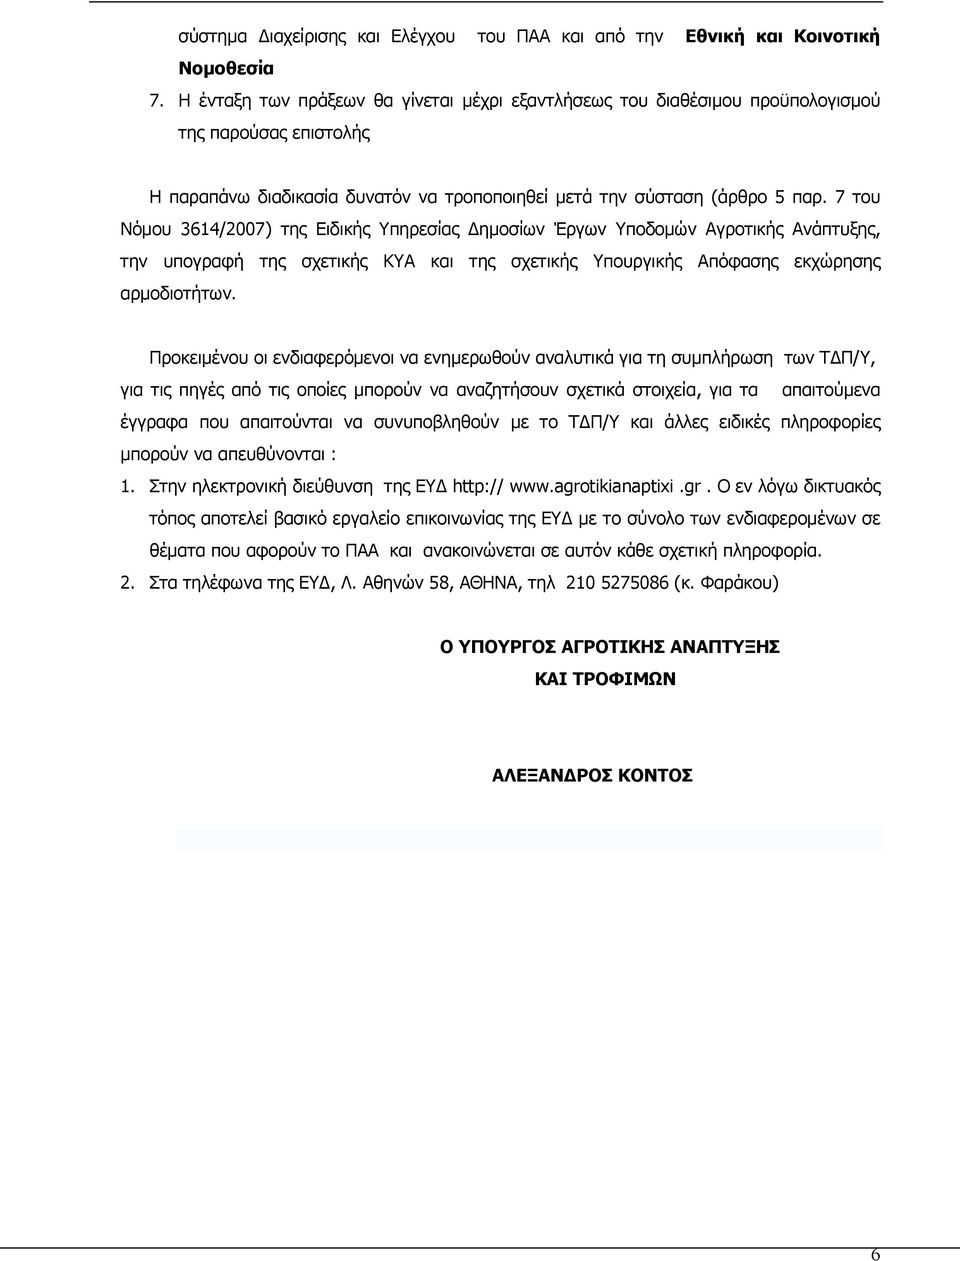 7 του Νόµου 3614/2007) της Ειδικής Υπηρεσίας ηµοσίων Έργων Υποδοµών Αγροτικής Ανάπτυξης, την υπογραφή της σχετικής ΚΥΑ και της σχετικής Υπουργικής Απόφασης εκχώρησης αρµοδιοτήτων.